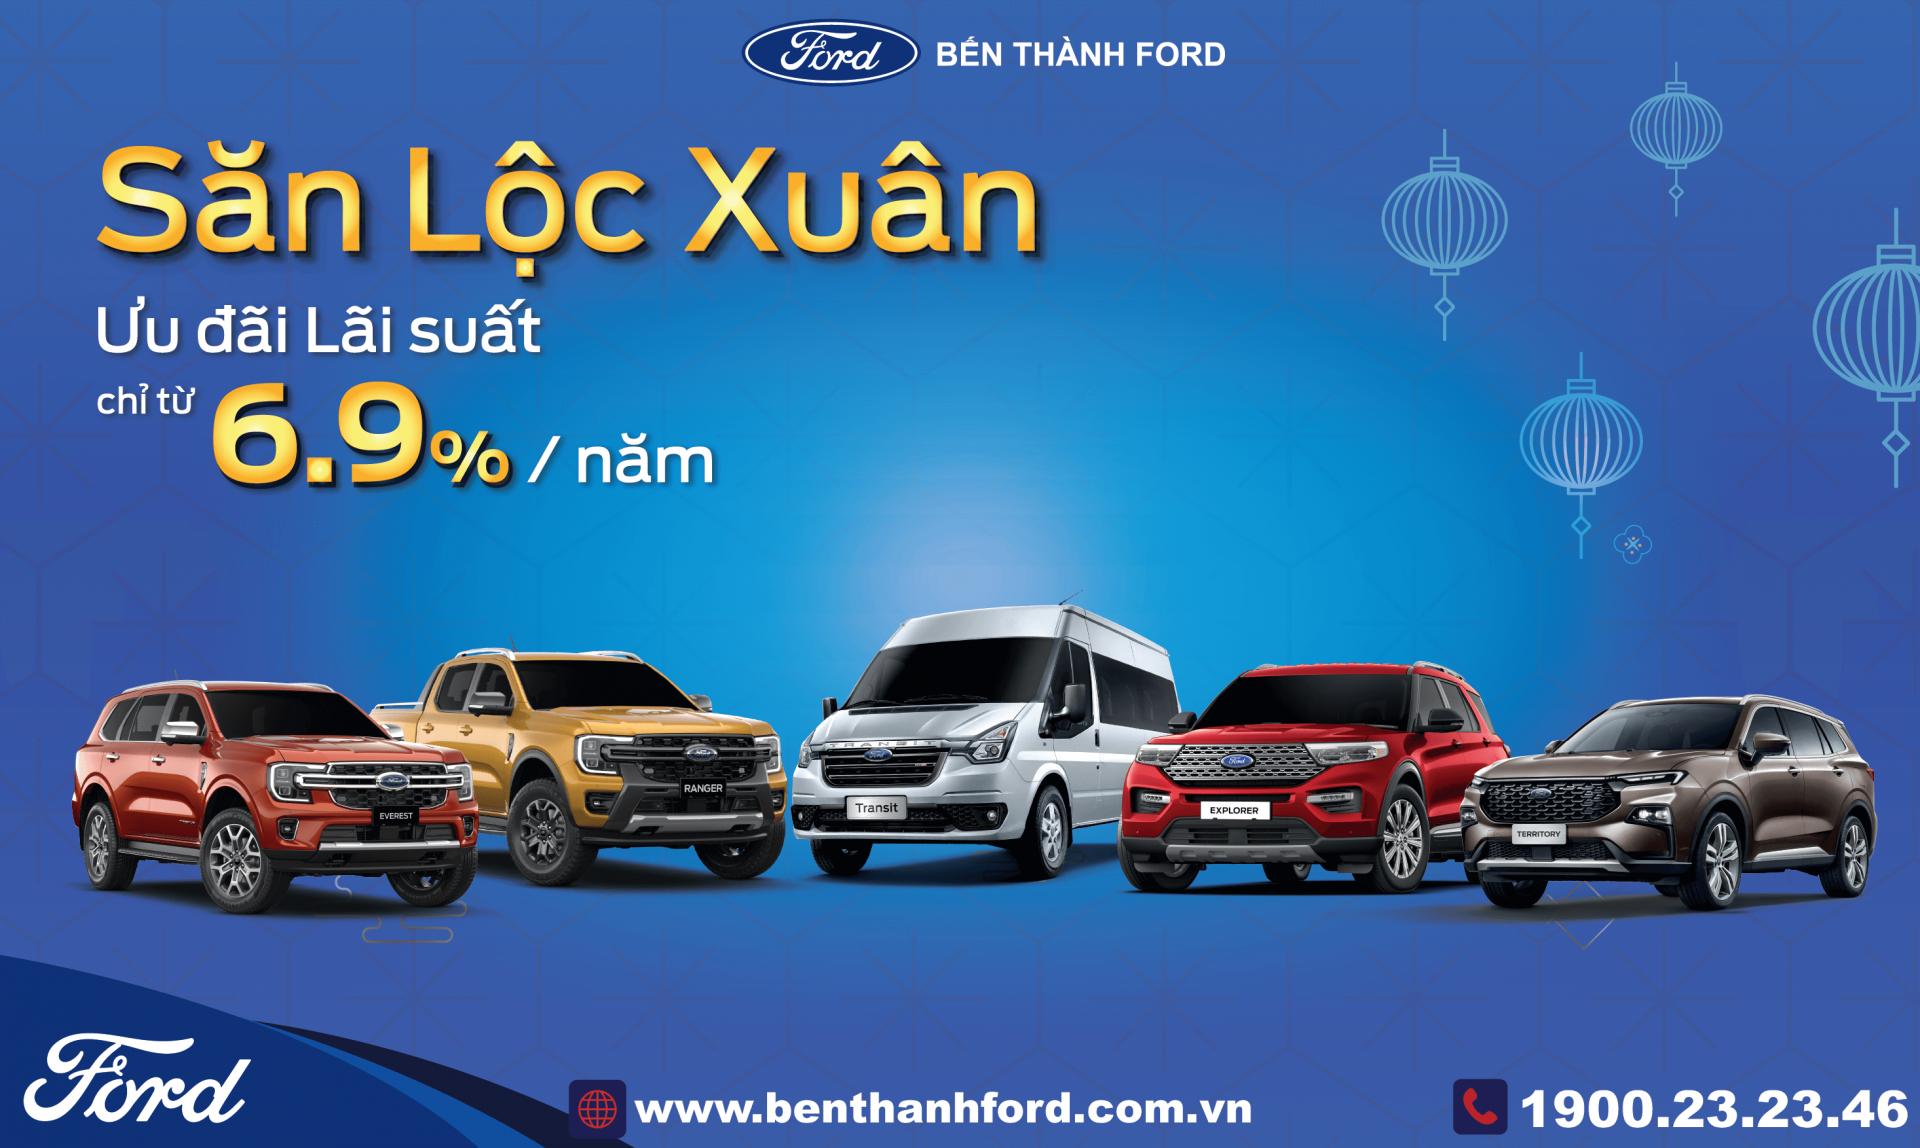 Chuong trinh San Loc Xuan Ben Thanh Ford